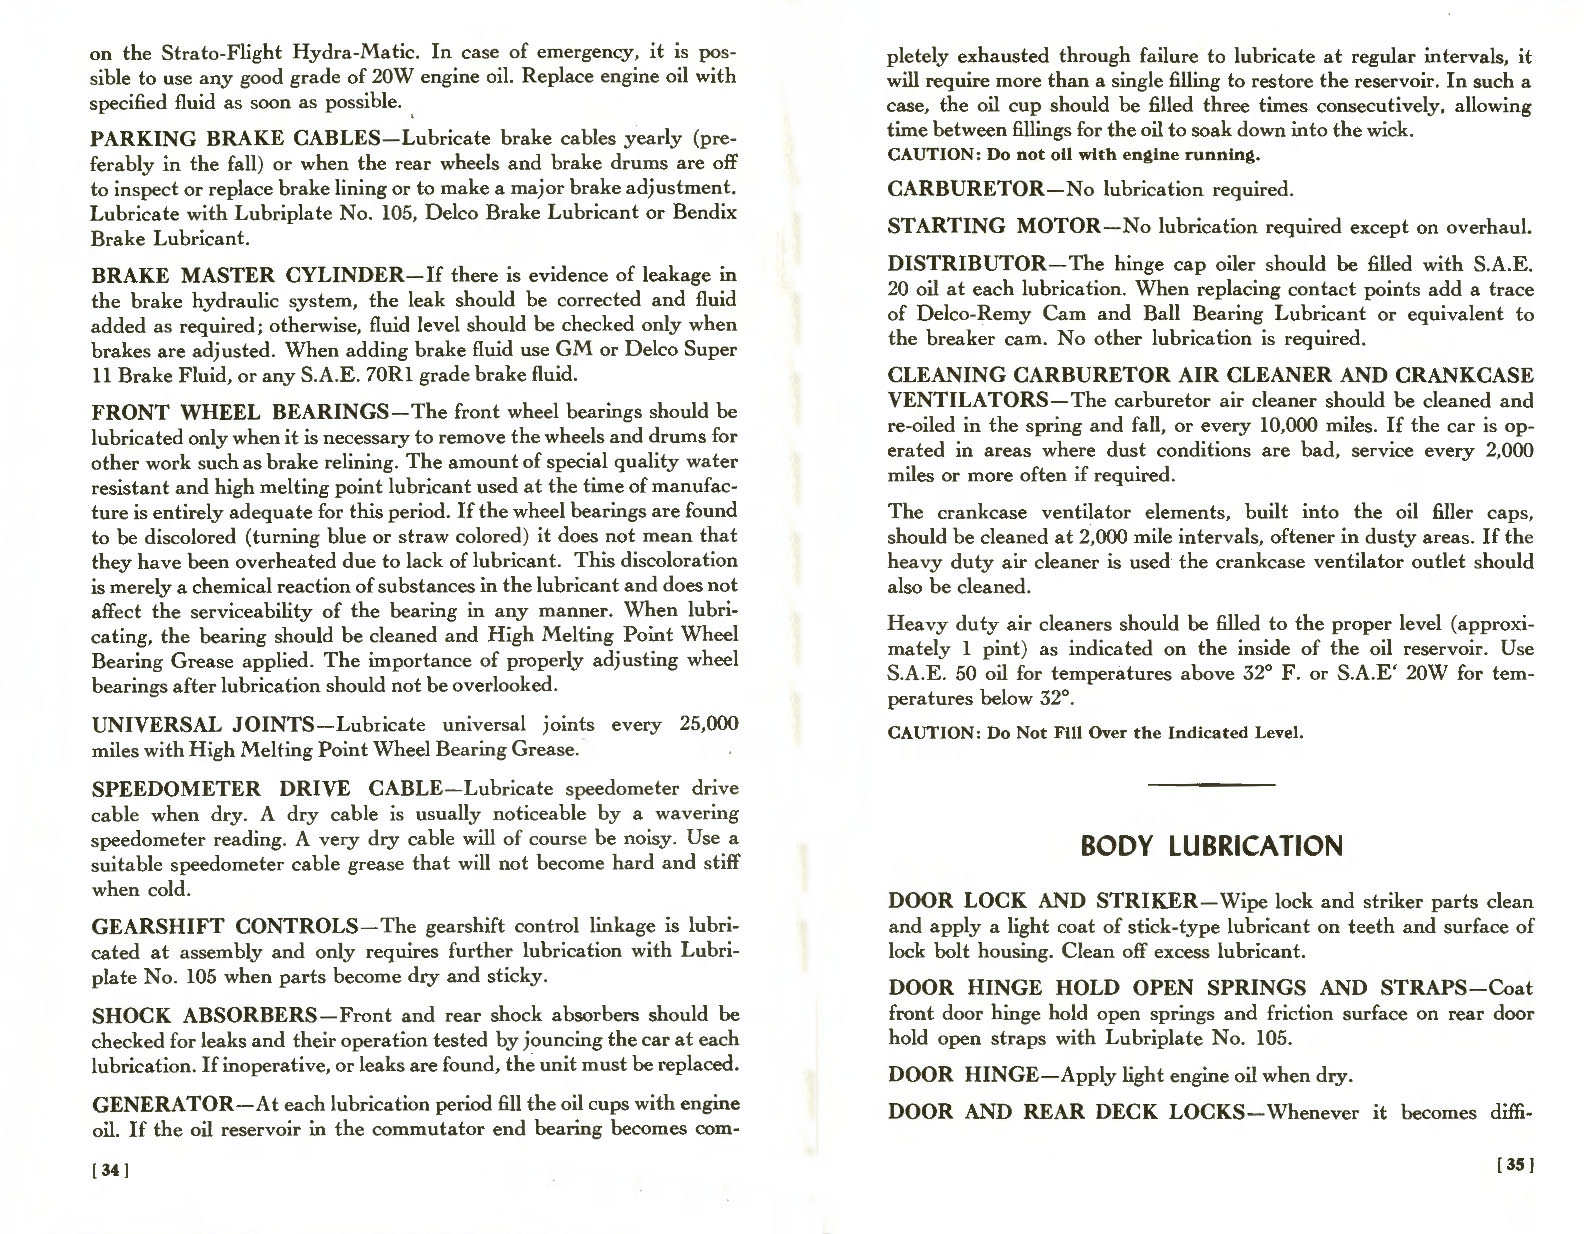 n_1957 Pontiac Owners Guide-34-35.jpg